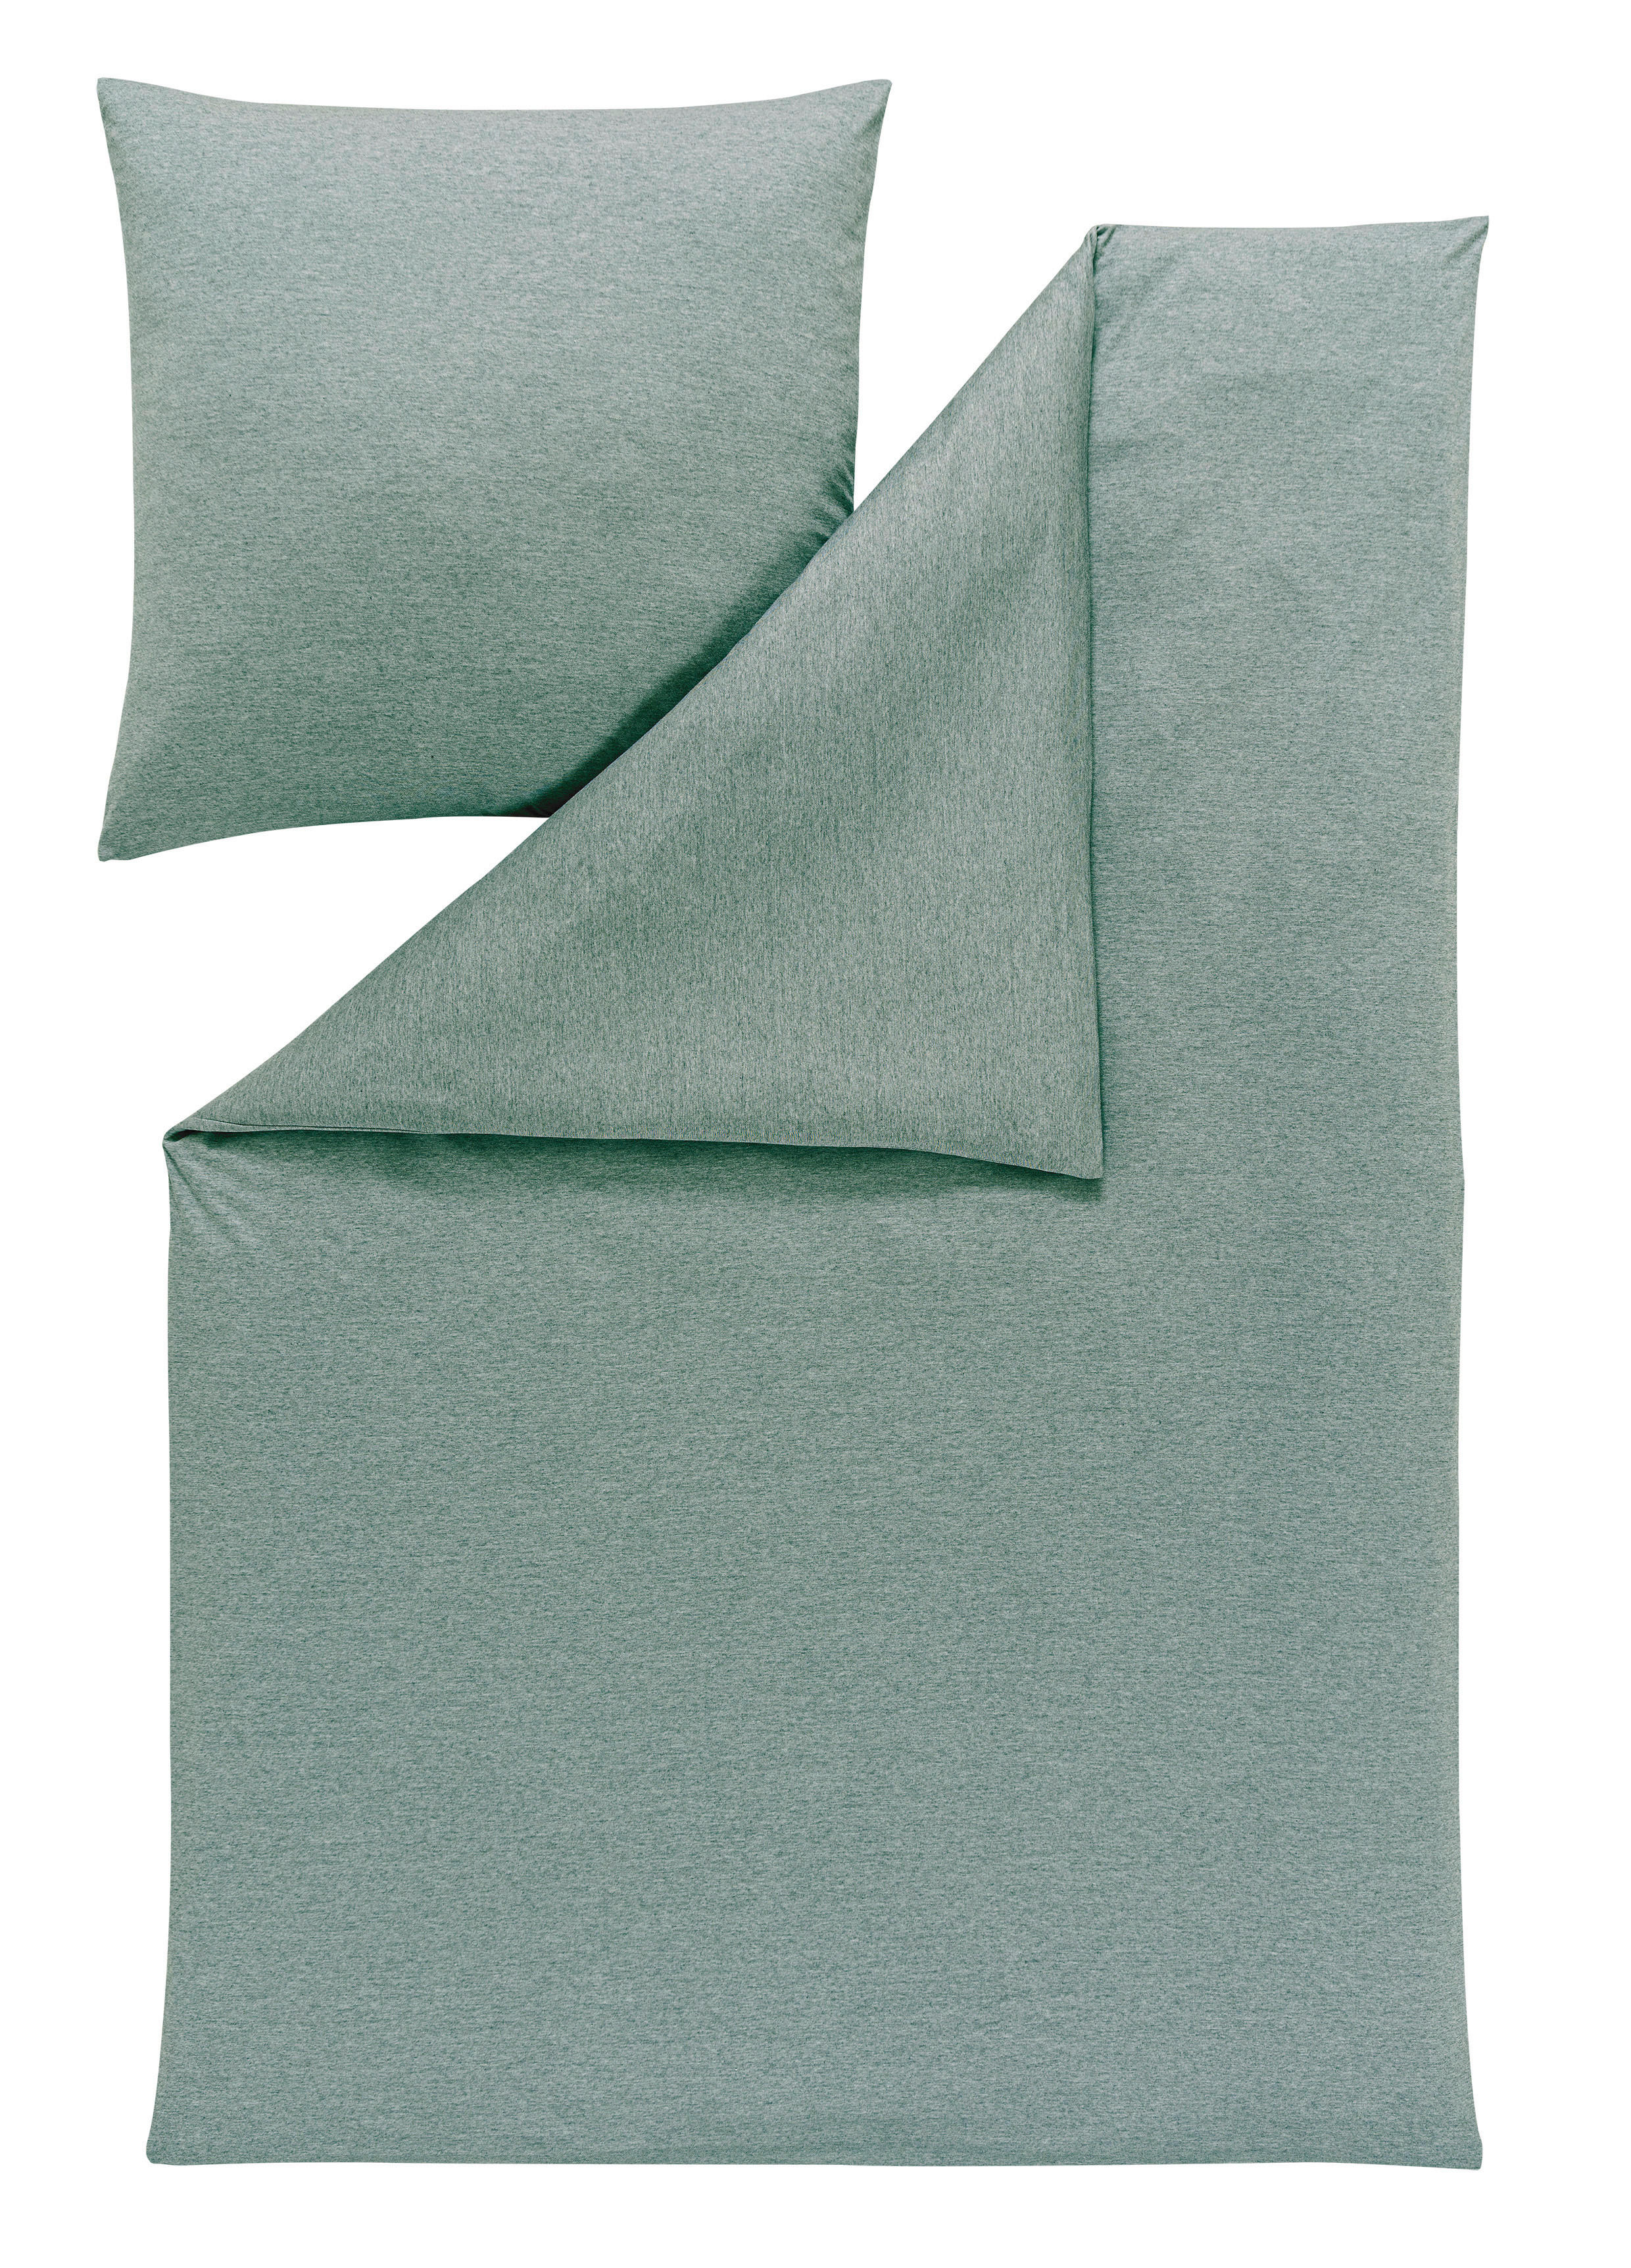 BETTWÄSCHE 135/200 cm  - Mintgrün, Basics, Textil (135/200cm) - Estella